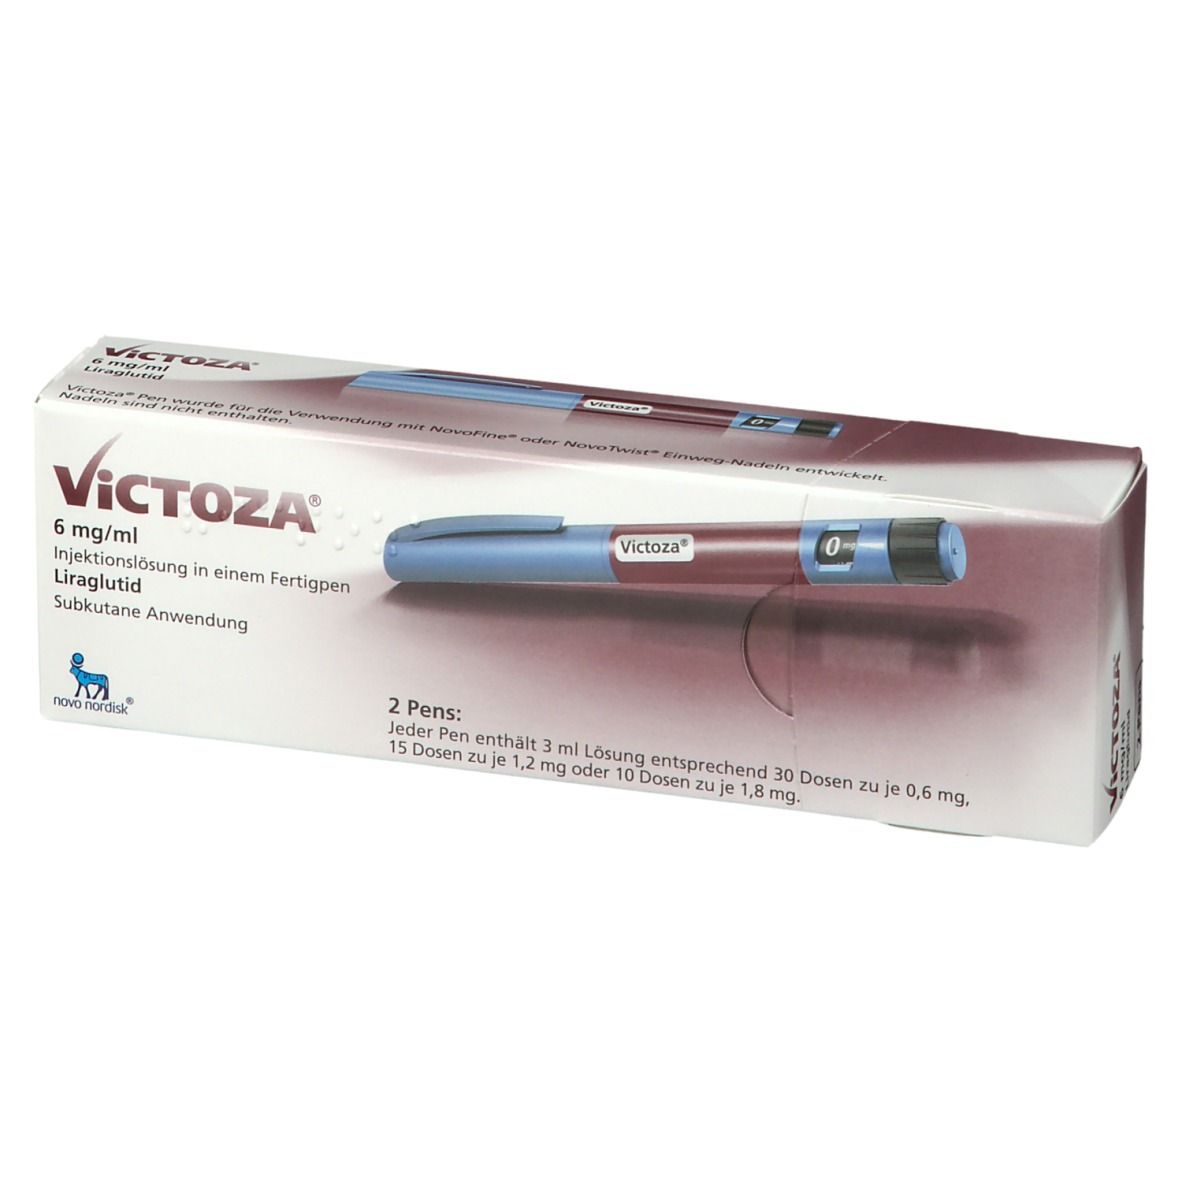 Victoza® 6 mg/ml